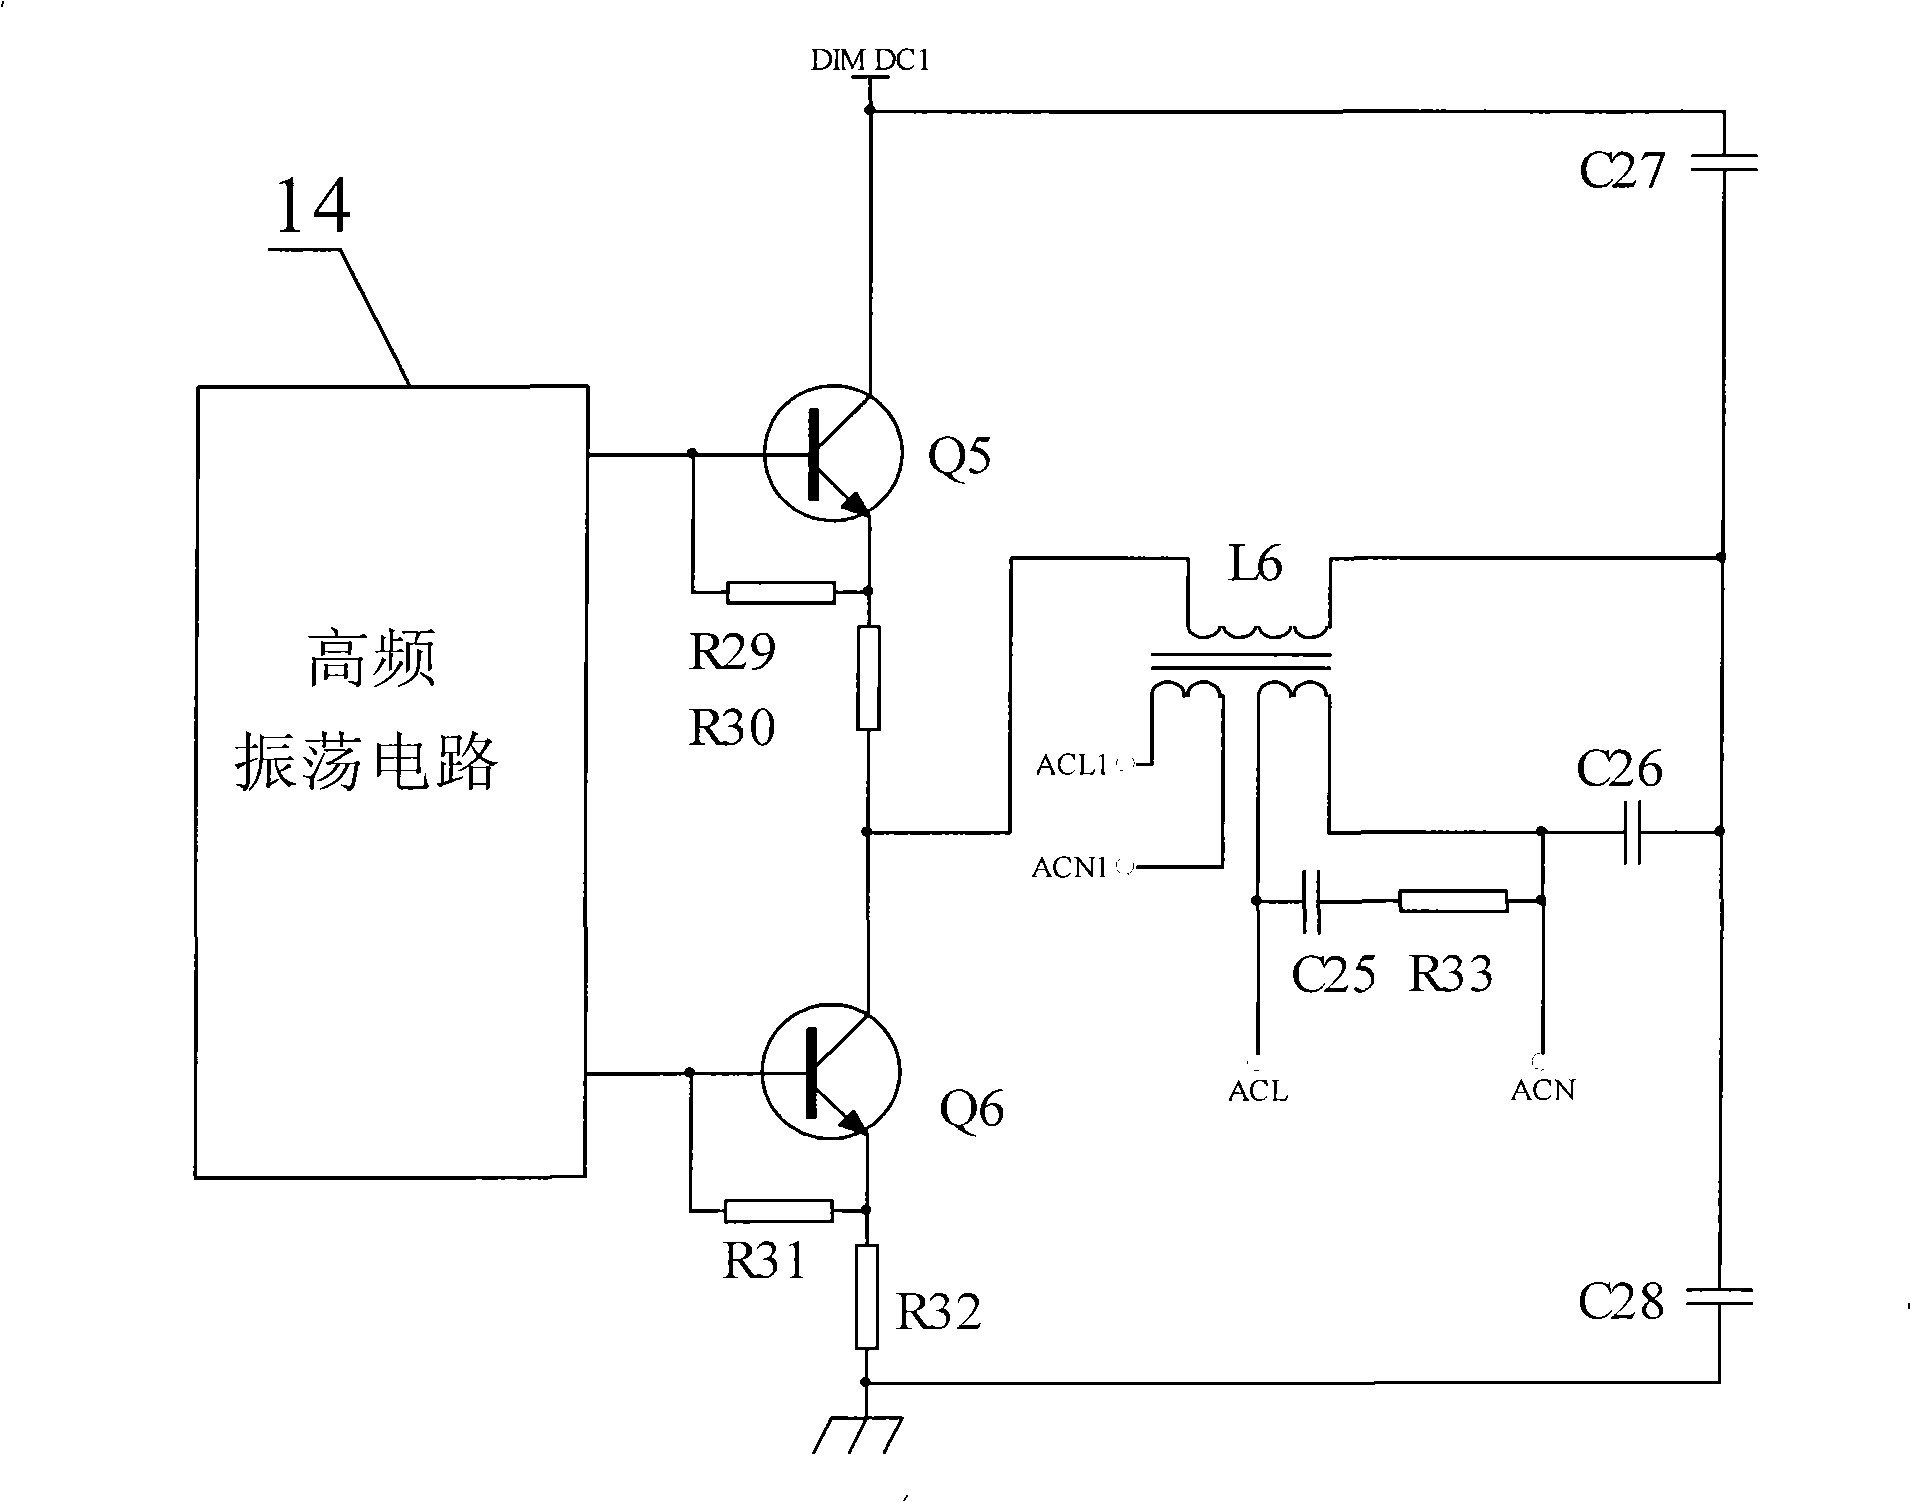 High voltage AC light-adjusting controller for general constant-current LED